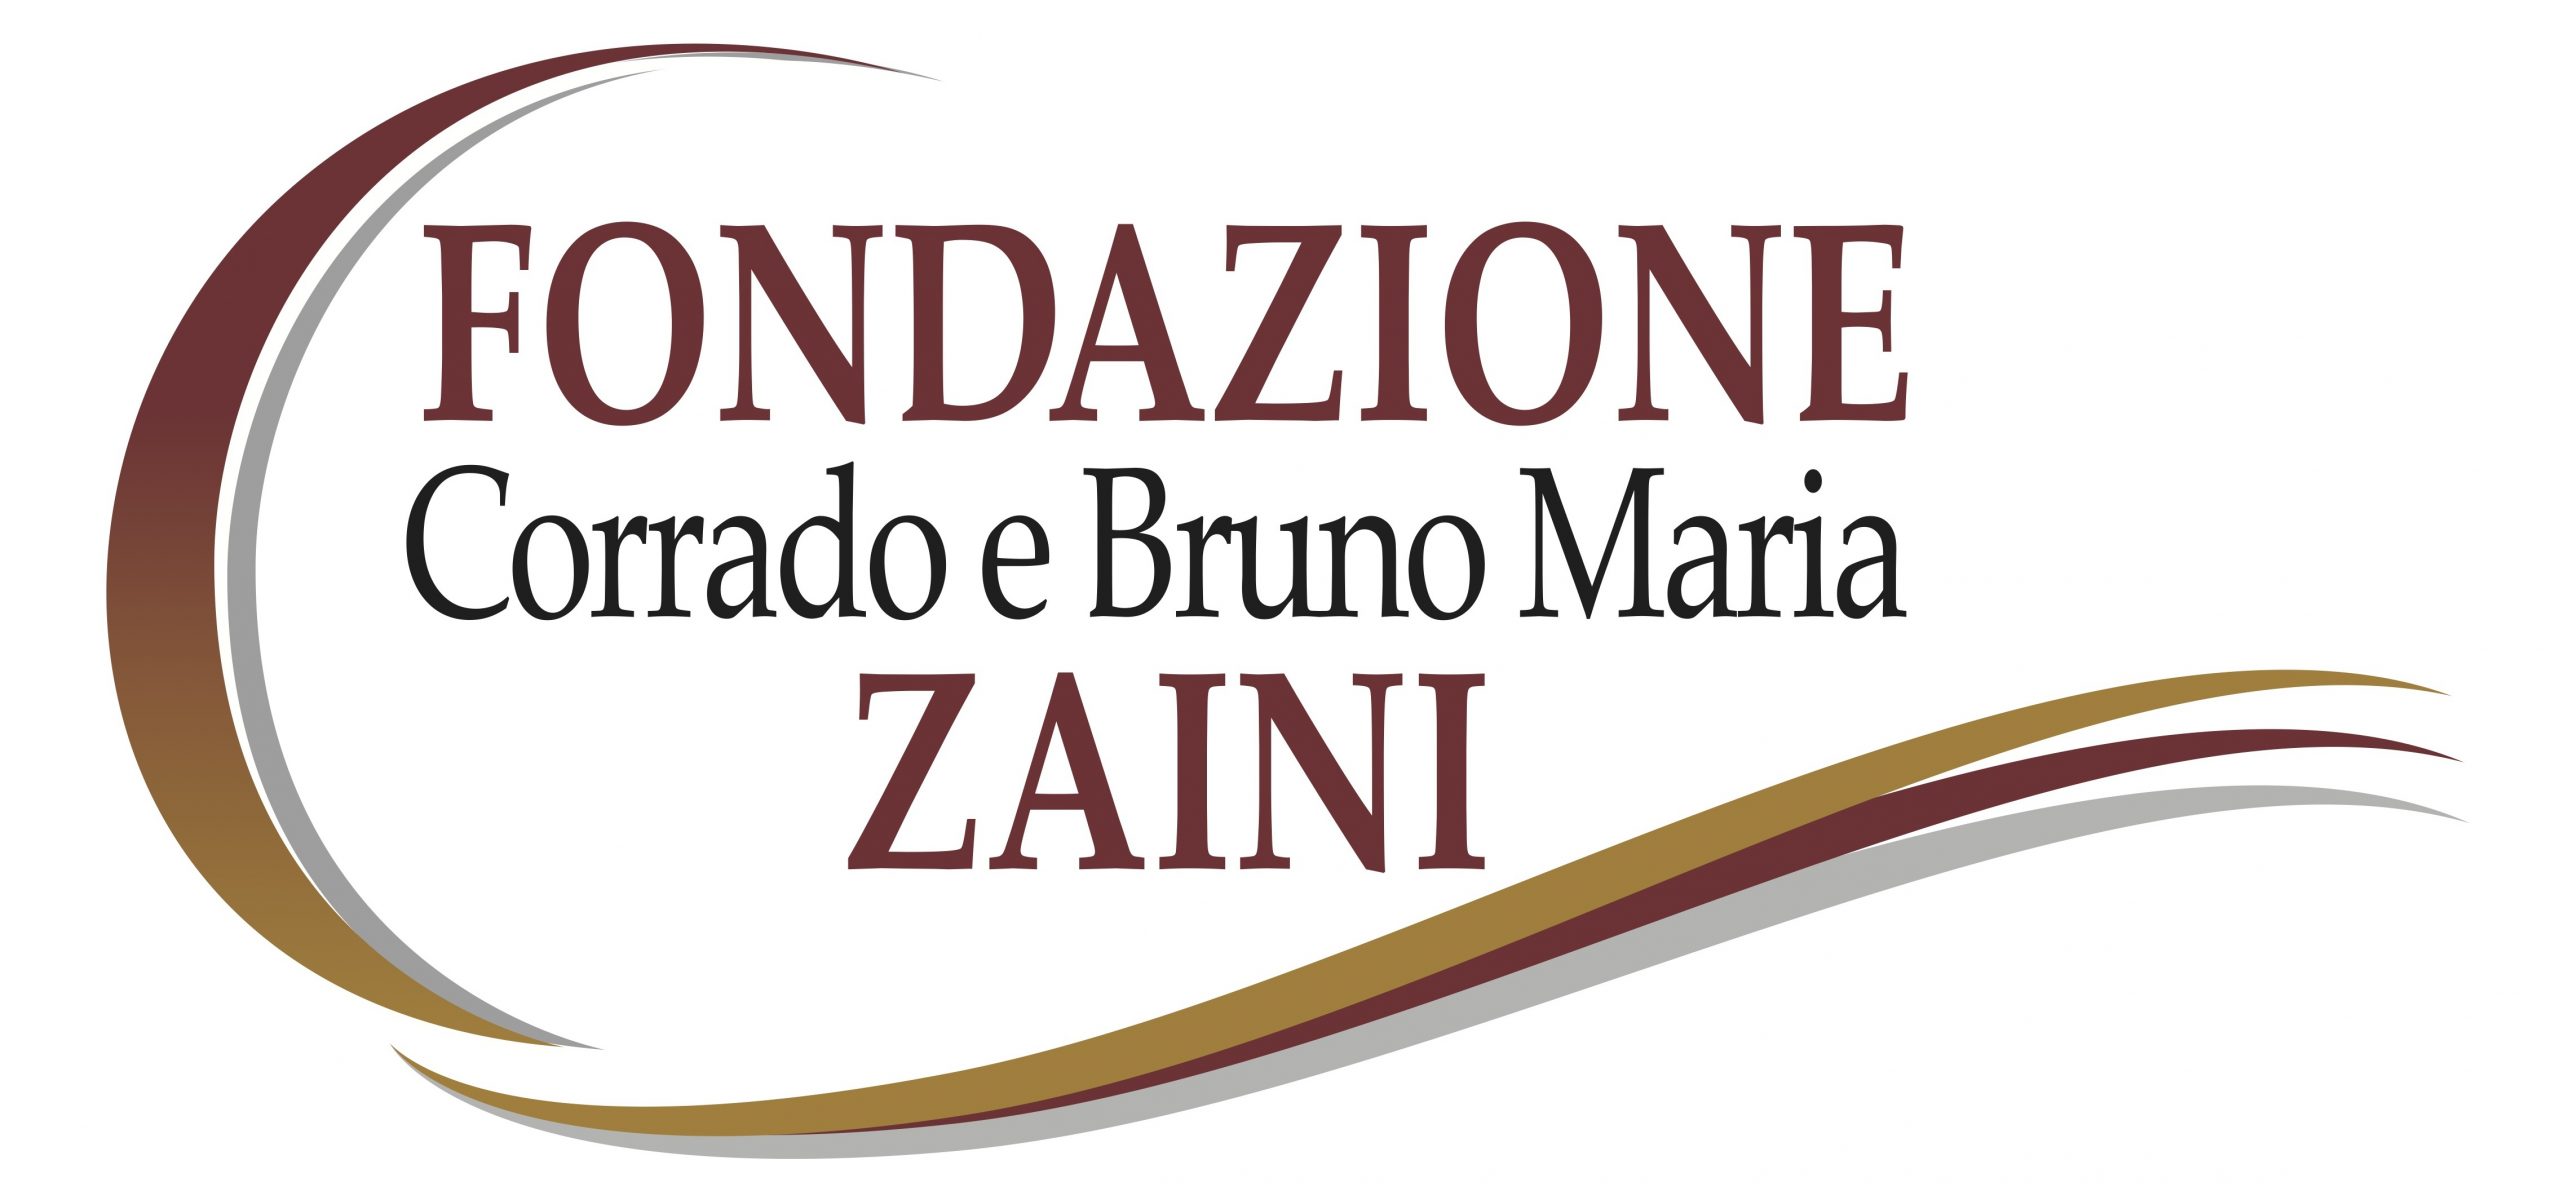 Fondazione Corrado e Bruno Maria Zaini